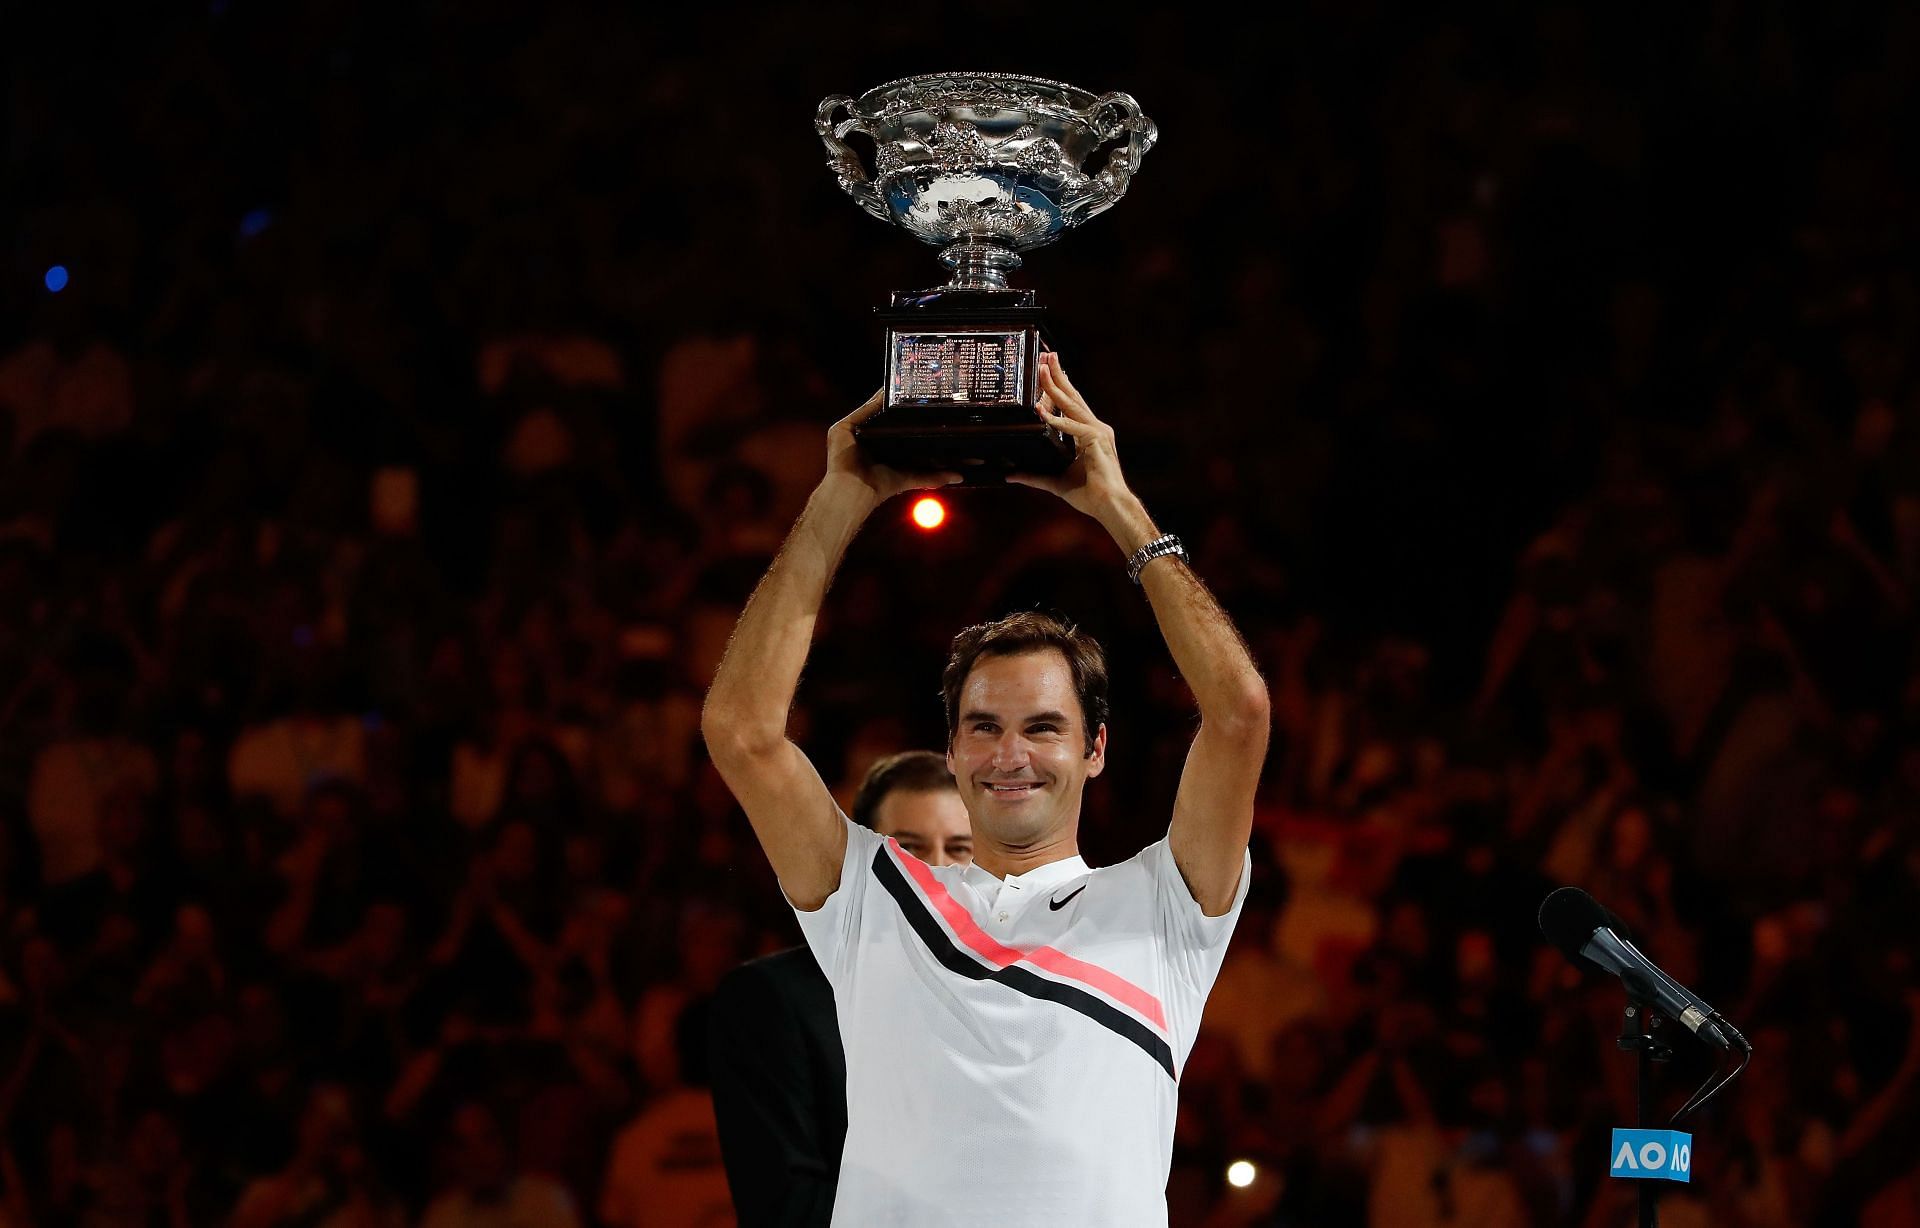 Roger Federer at the 2018 Australian Open final